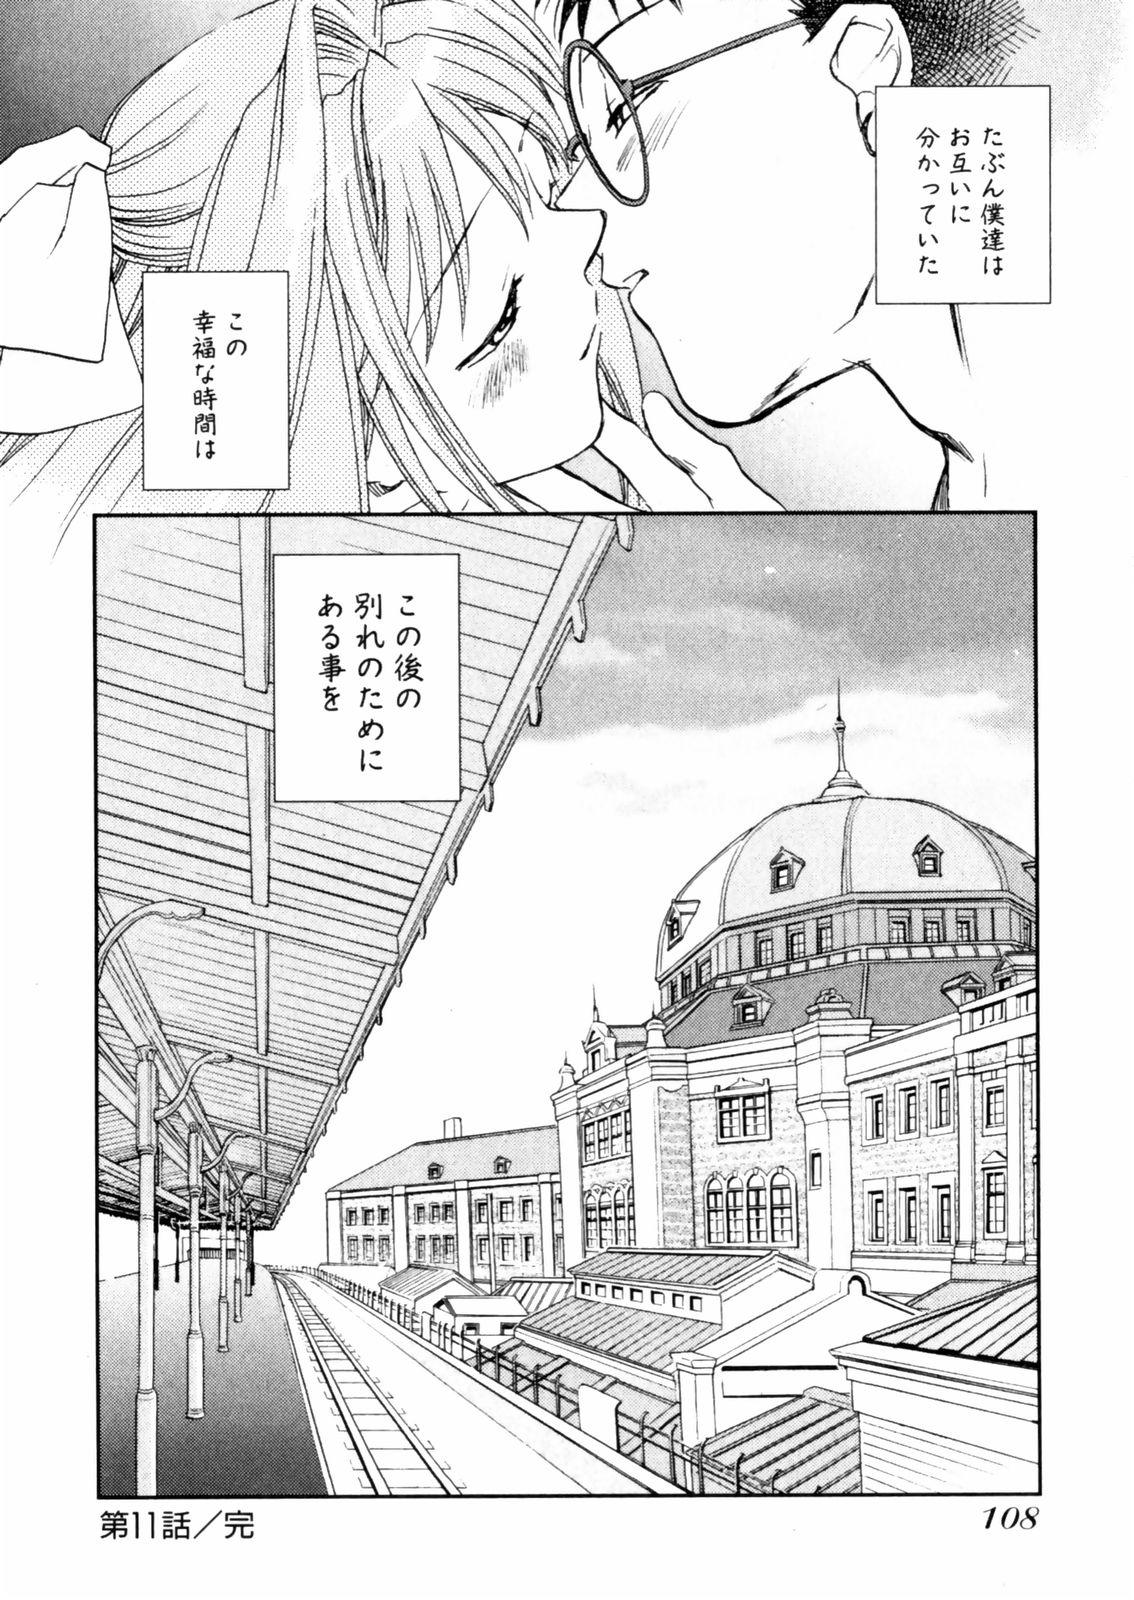 [Okano Ahiru] Hanasake ! Otome Juku (Otome Private Tutoring School) Vol.2 109